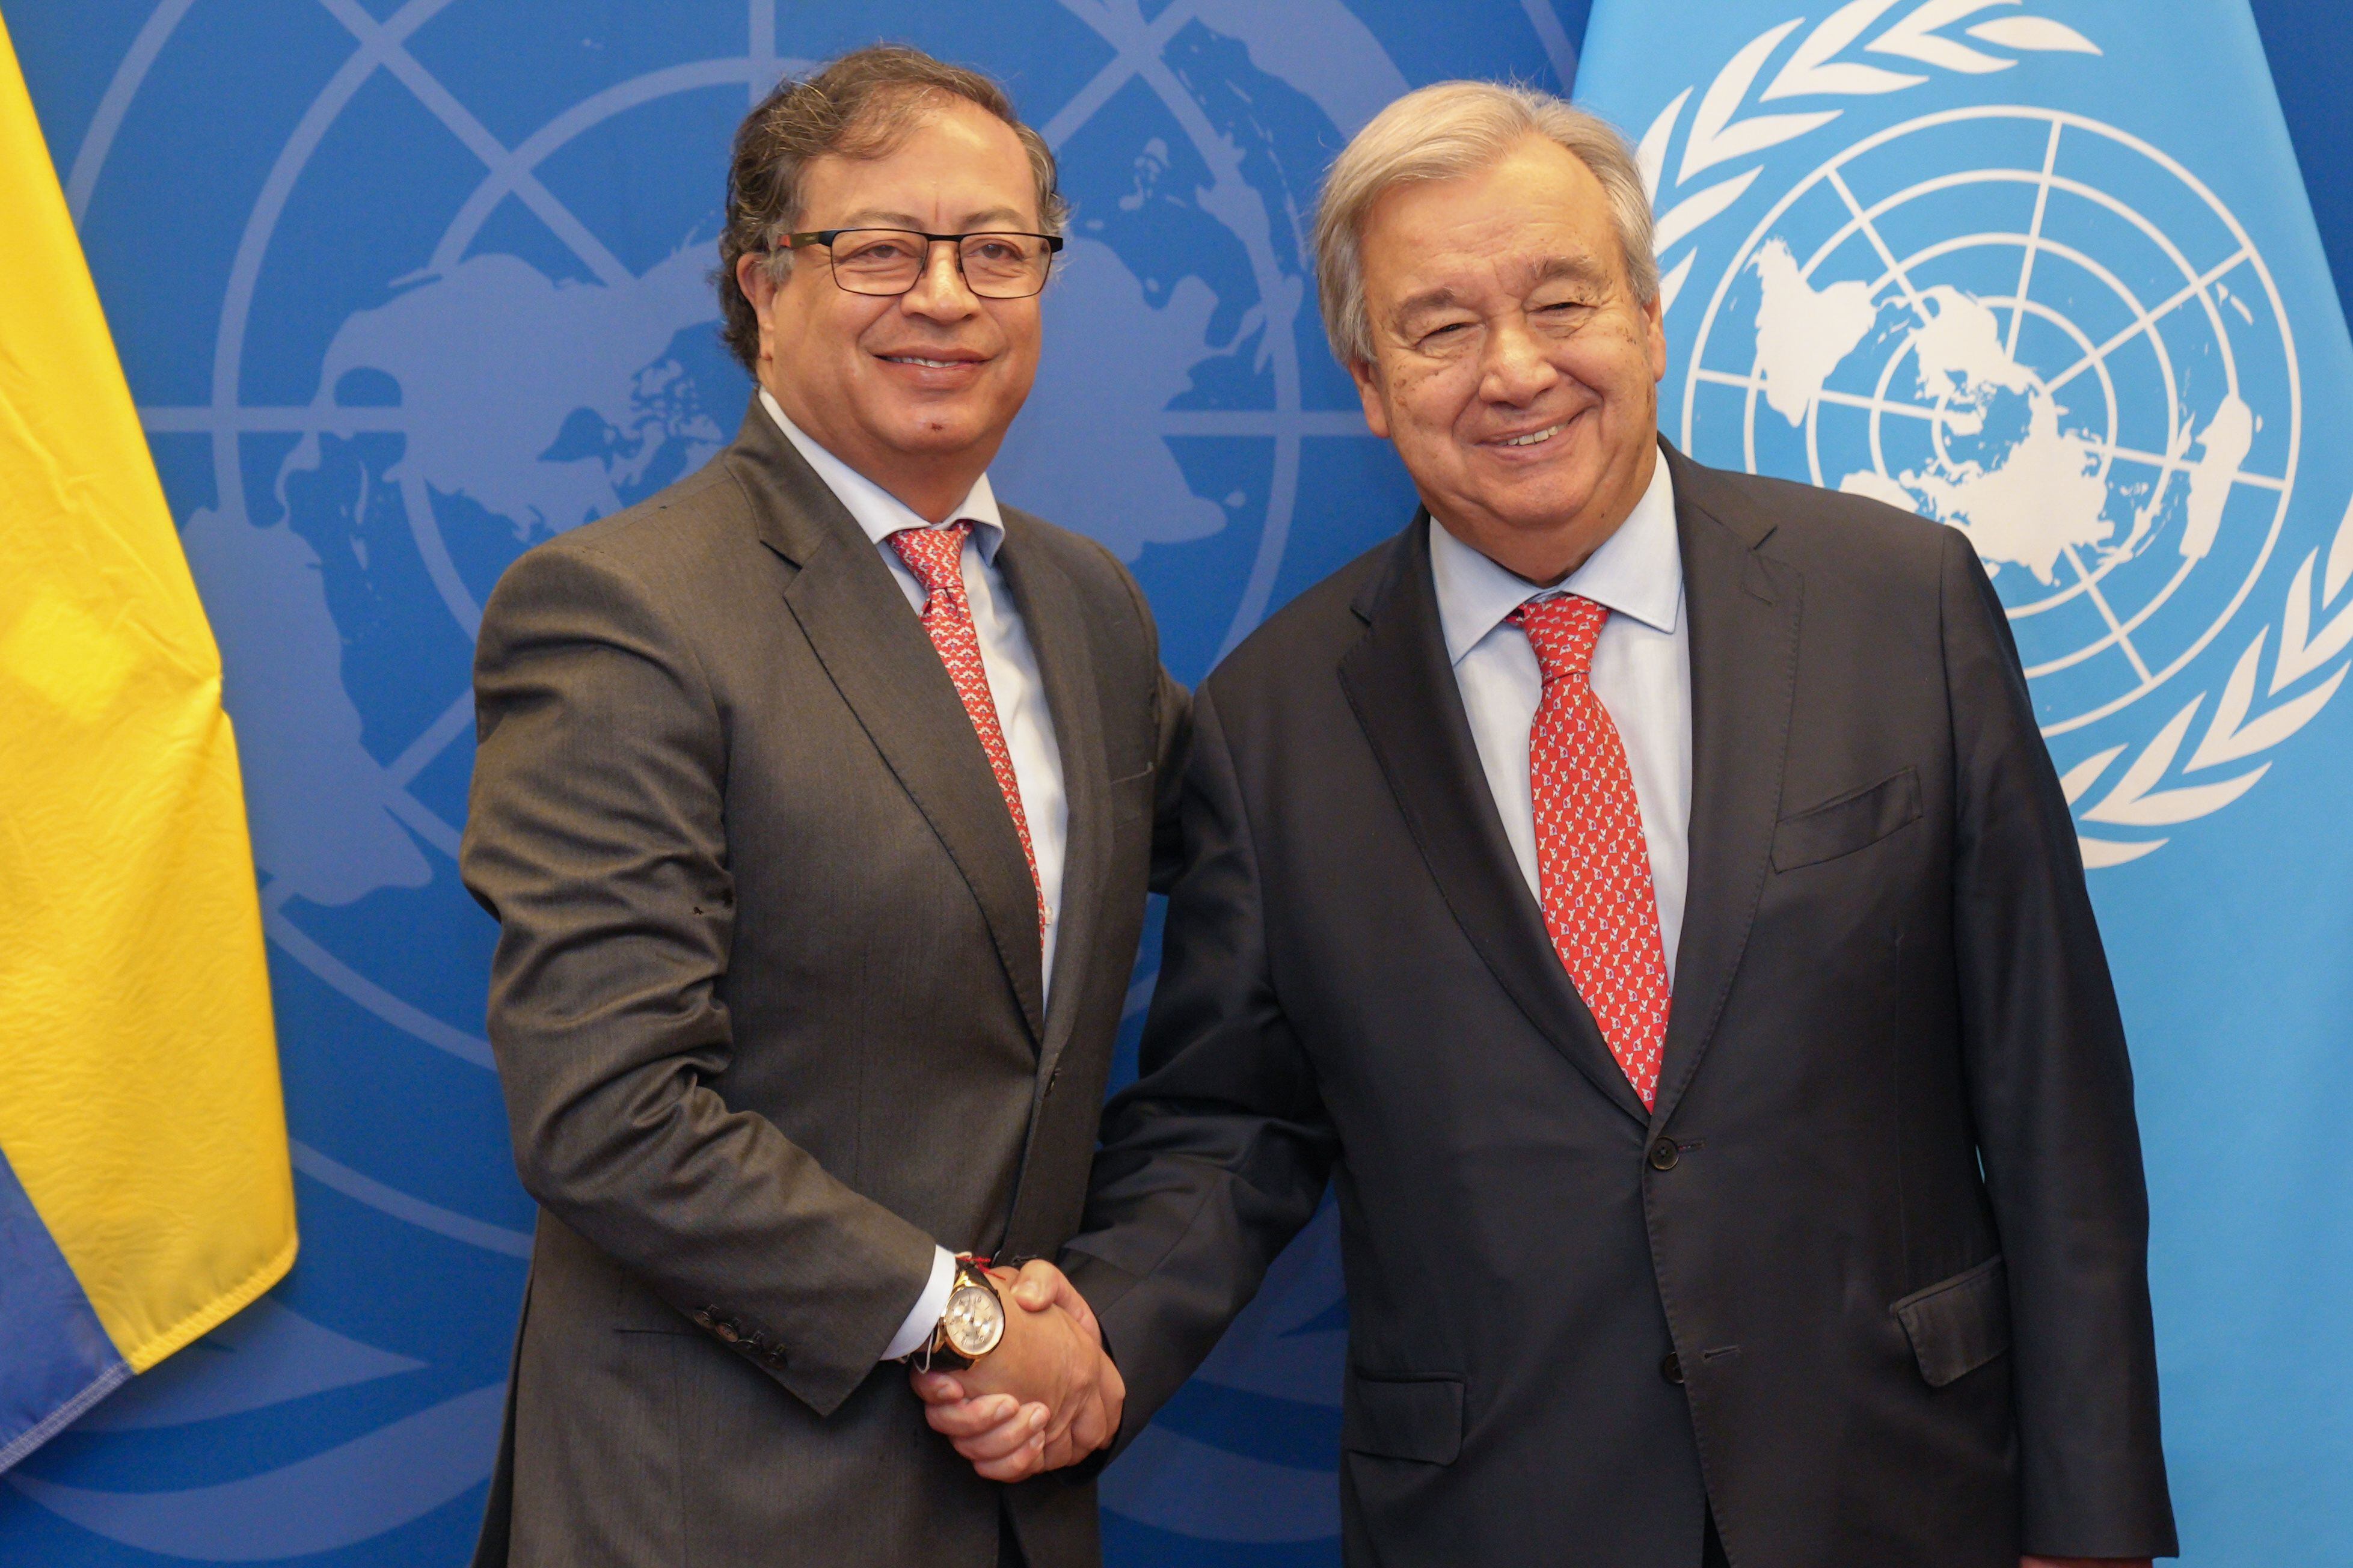 En el saludo, Guterres y Petro hablaron sobre otros temas de interés mutuo como la nueva política antidrogas y la crisis climática - crédito Presidencia/Juan Diego Cano